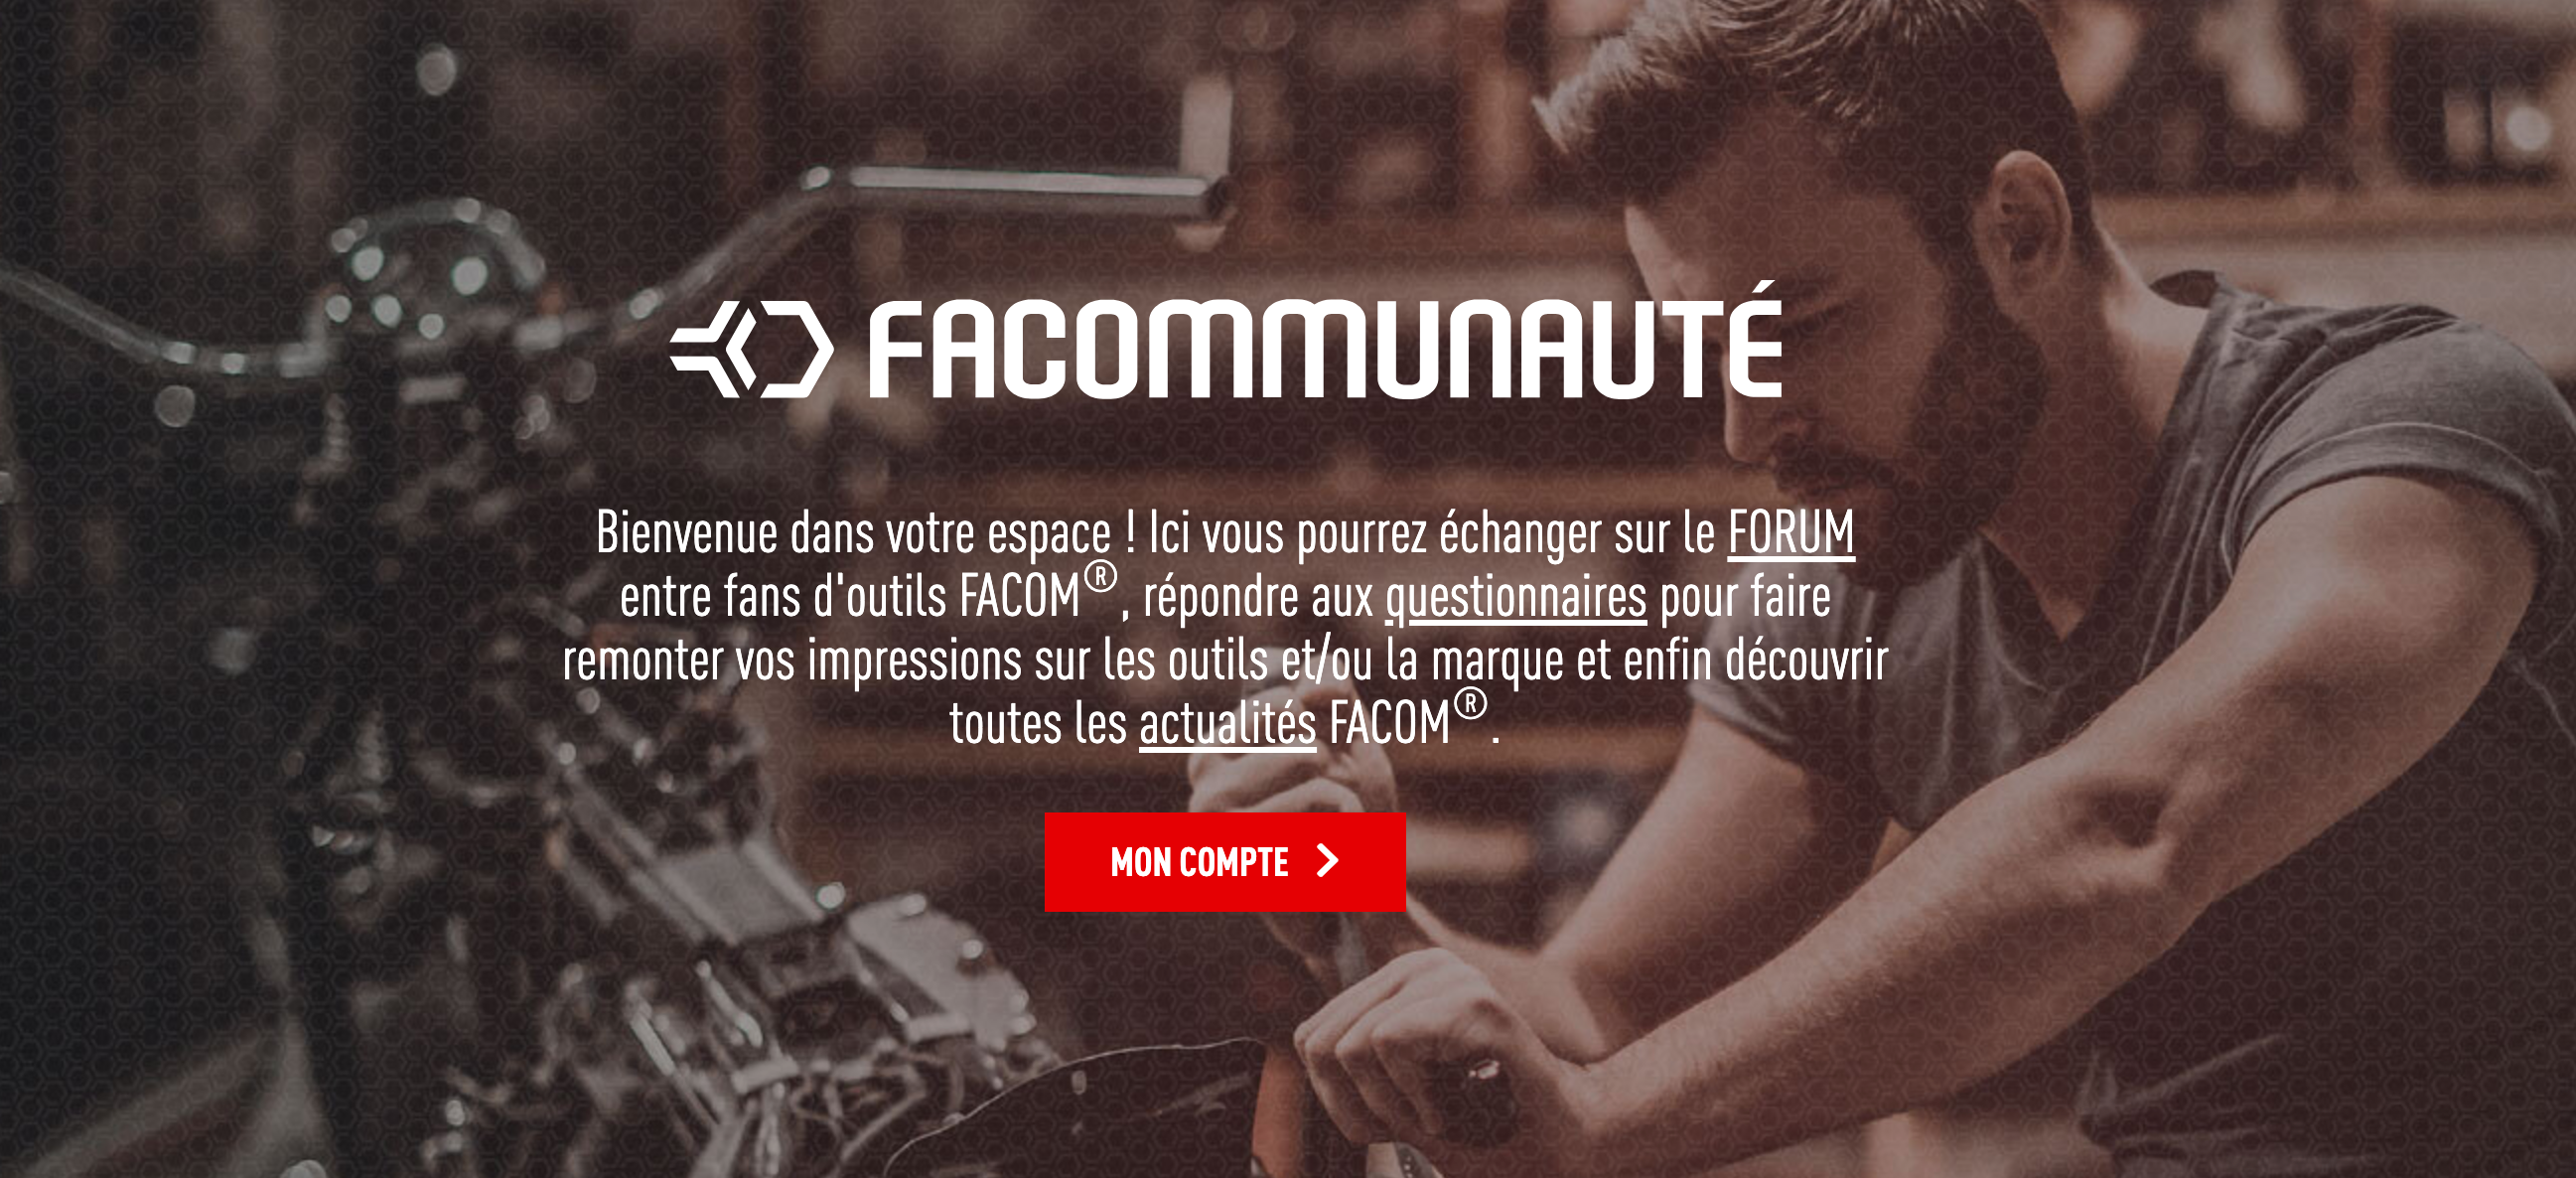 Facom : comment letmotiv réconcilie les données clients & produits avec la Facommunauté